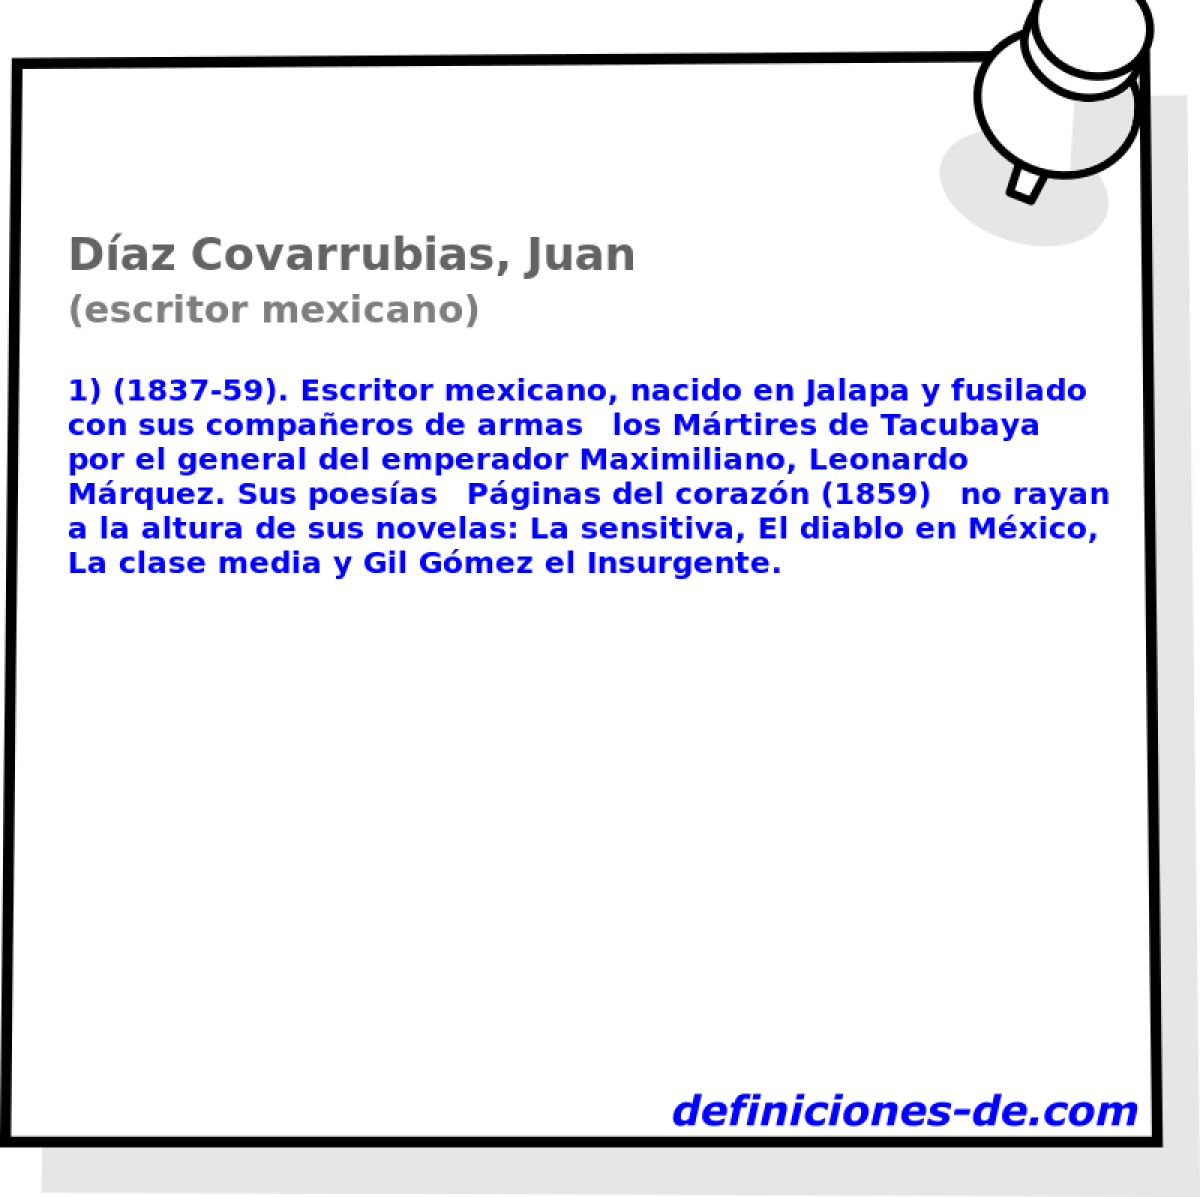 Daz Covarrubias, Juan (escritor mexicano)